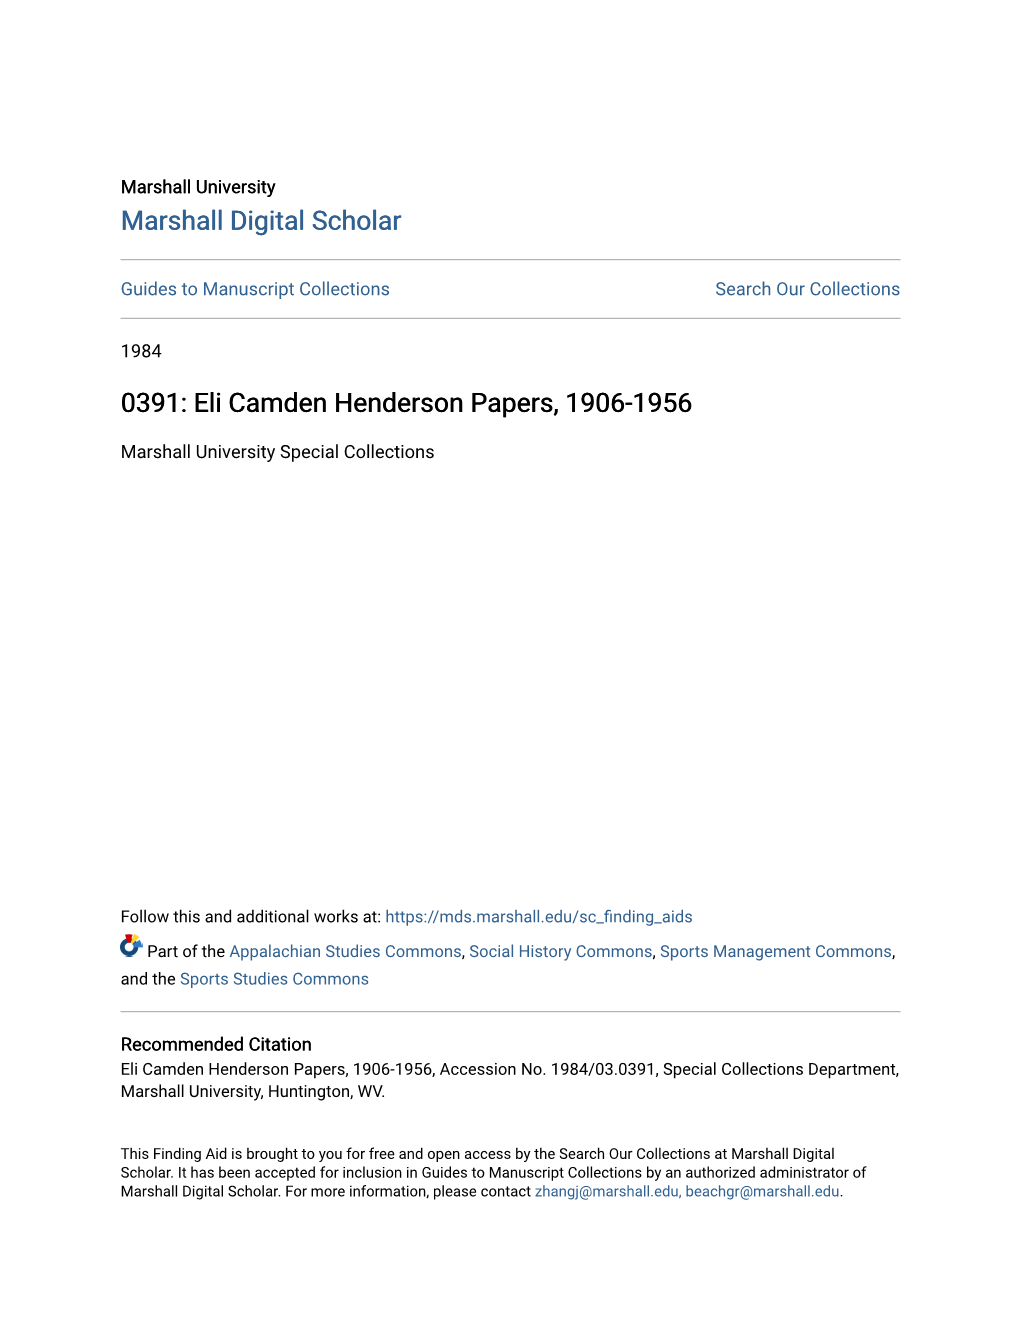 Eli Camden Henderson Papers, 1906-1956